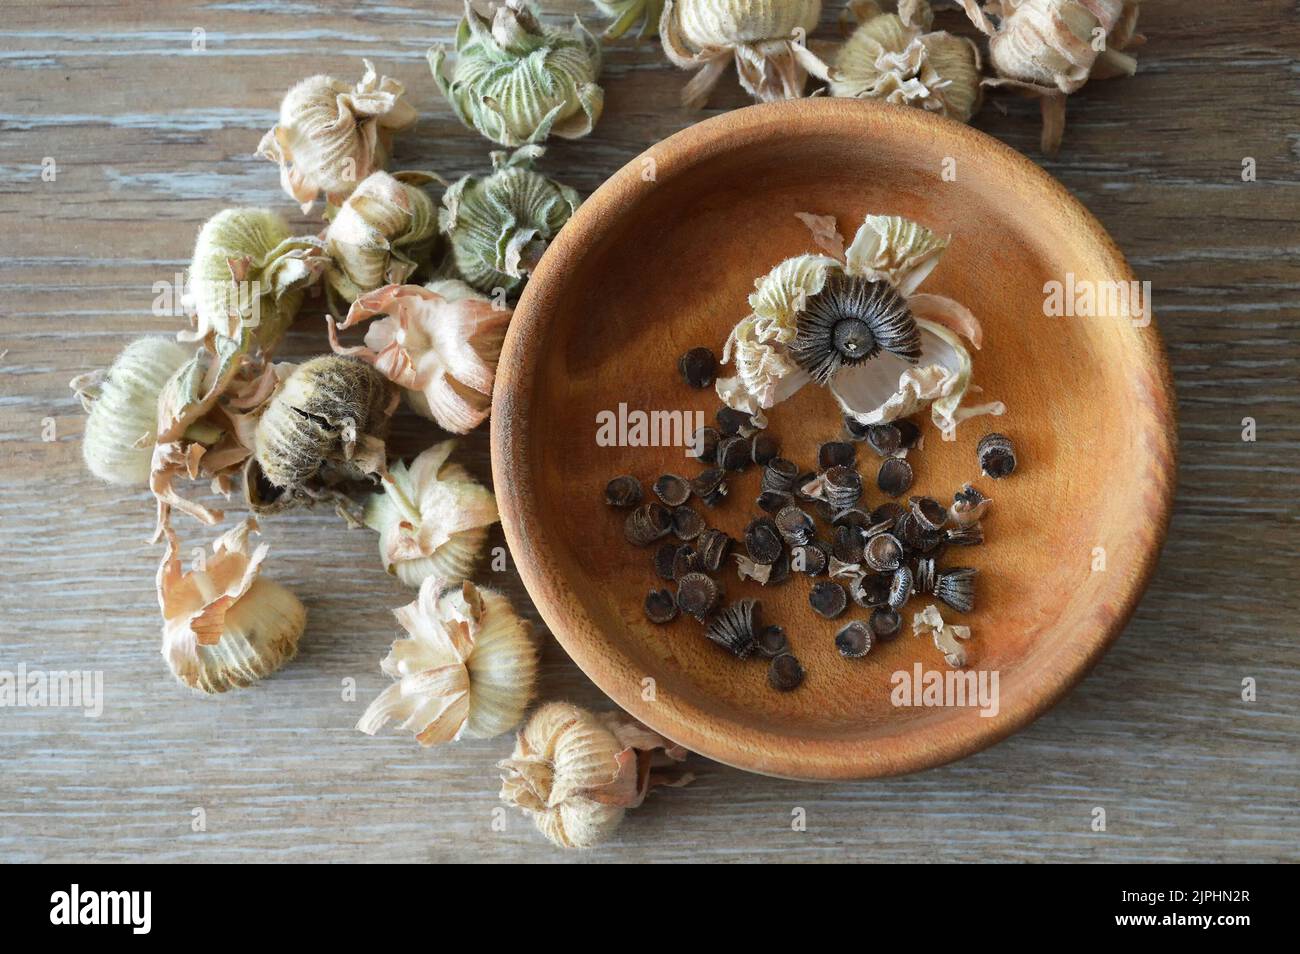 Draufsicht auf Hollyhock-Samen in Holzschüssel. Sammeln von Hollyhock-Blumensamen aus getrockneten Samenschoten Stockfoto